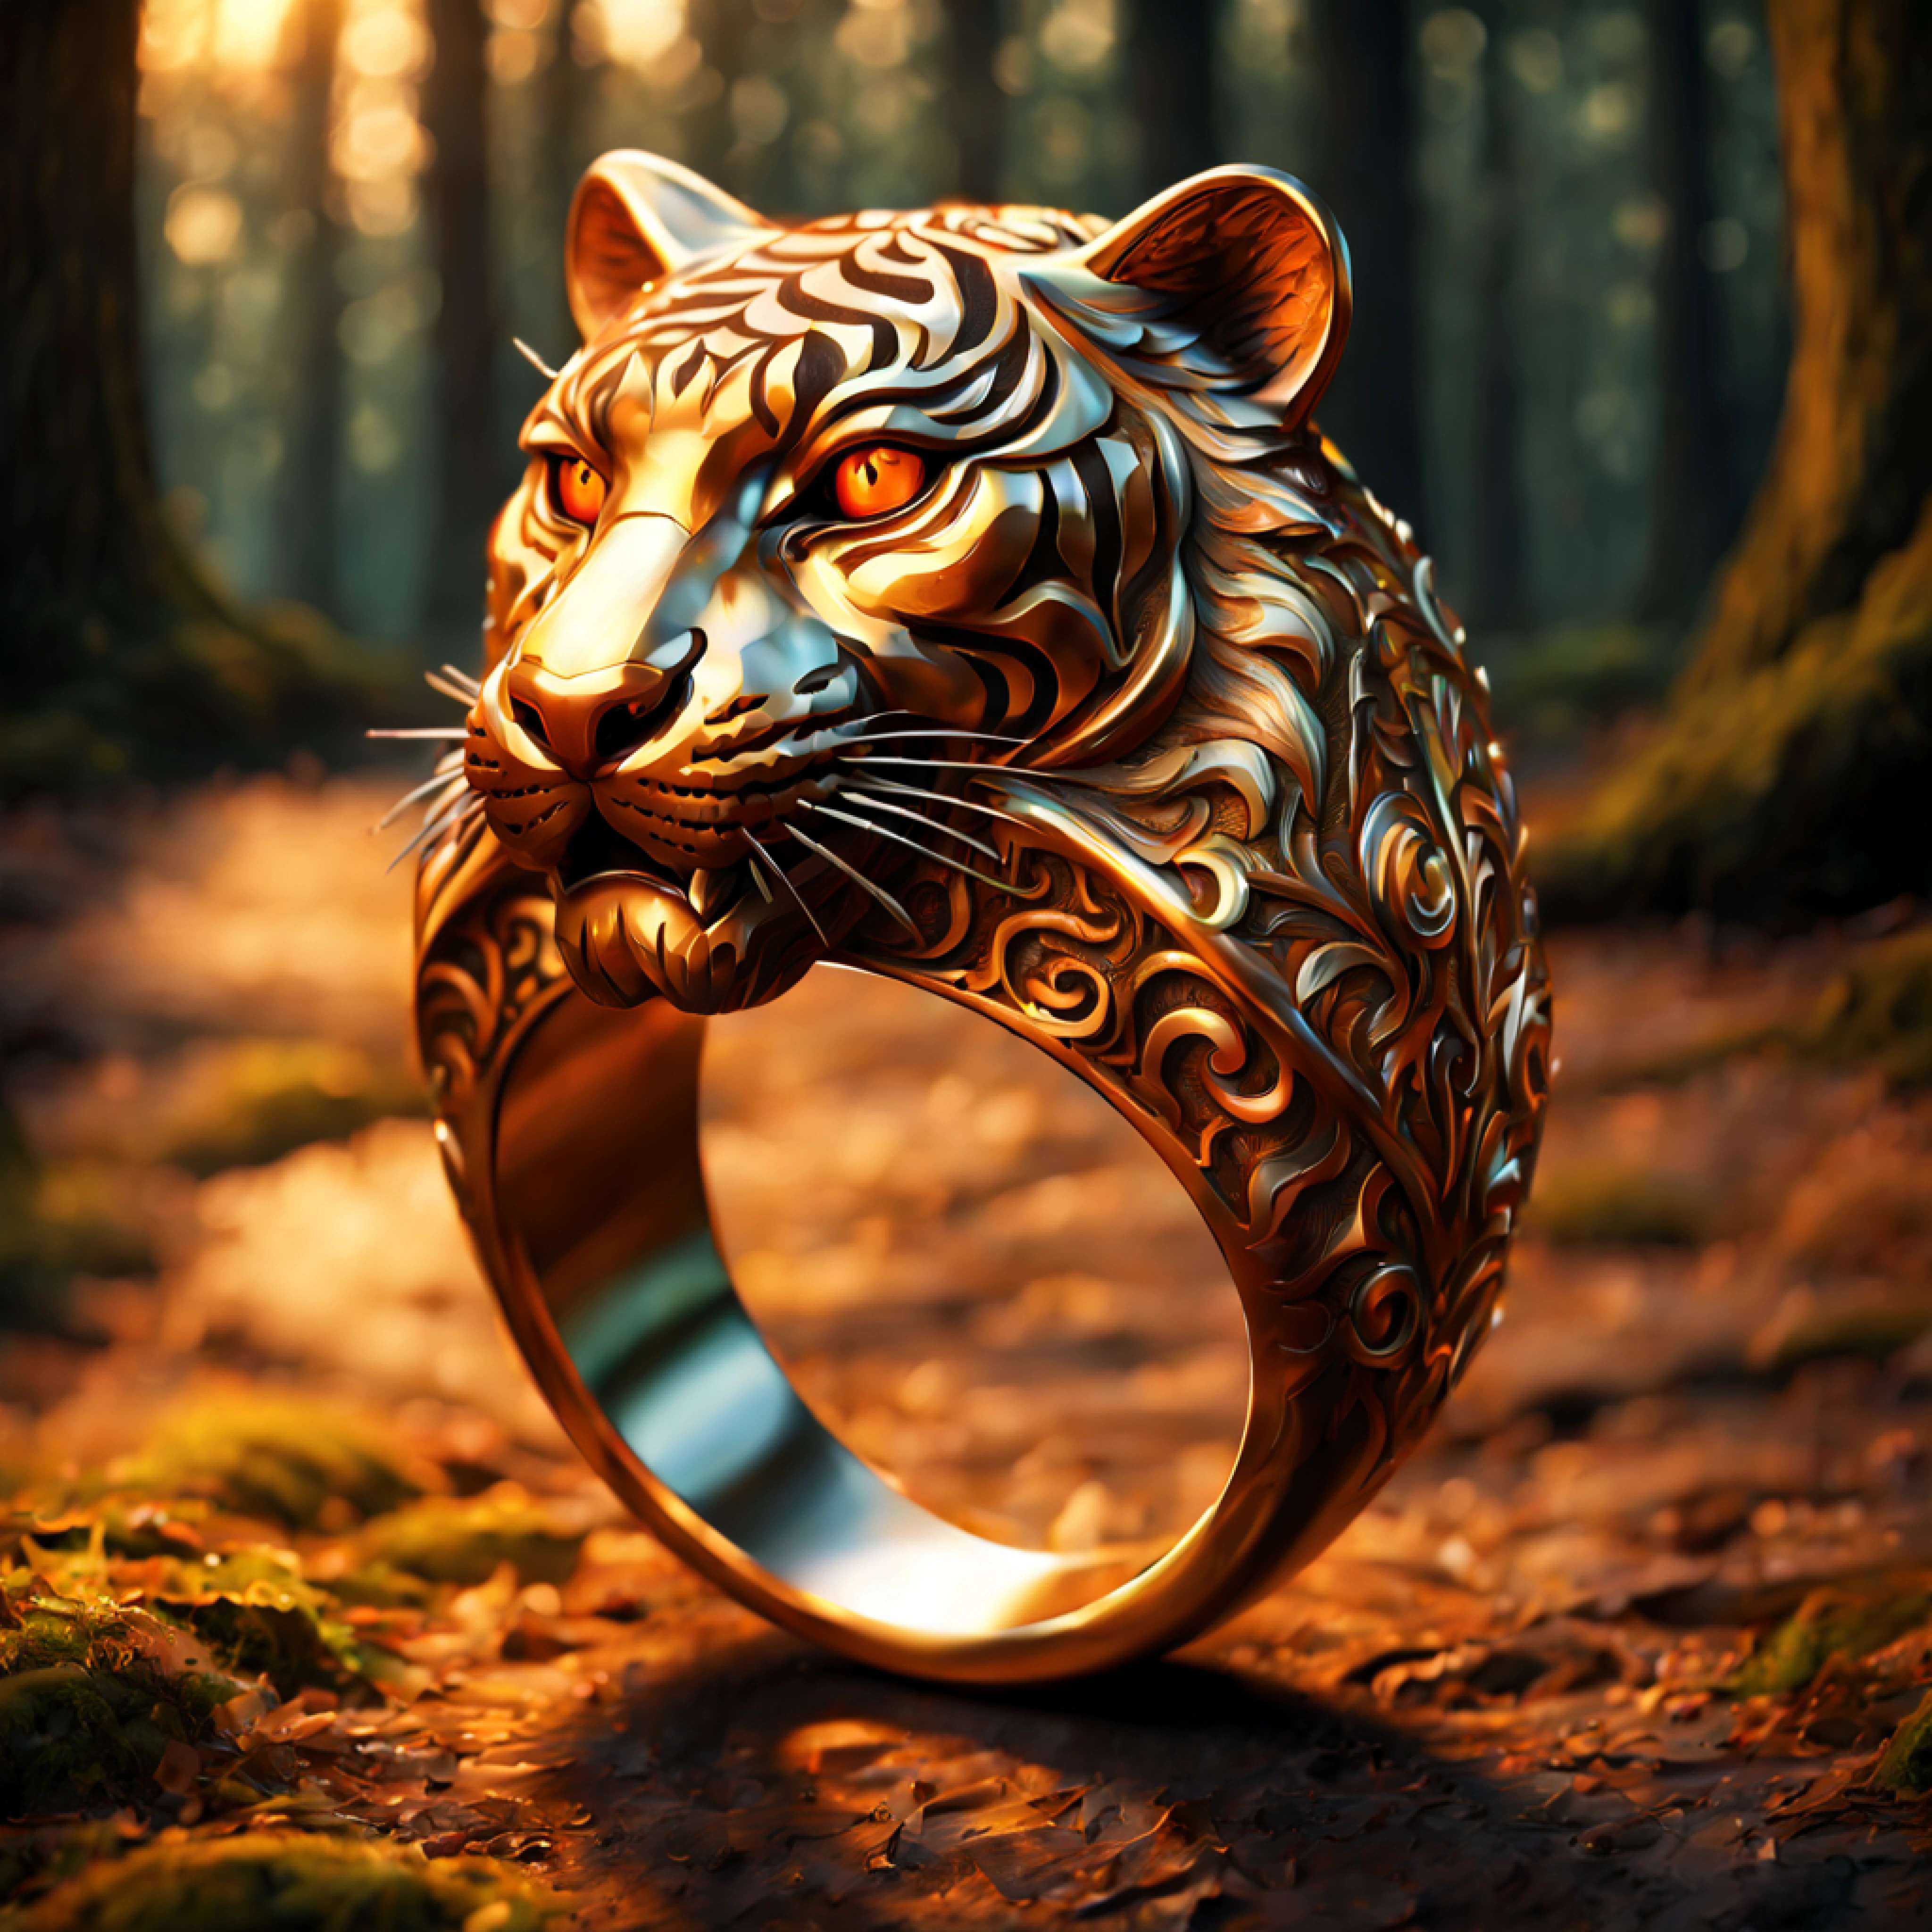 (3D 绘图), (雄伟的戒指，上面有复杂的老虎雕刻:1.2), 丰富华丽的图案, 橙子 (金属反射:1.2), (浪漫森林背景:1.4)